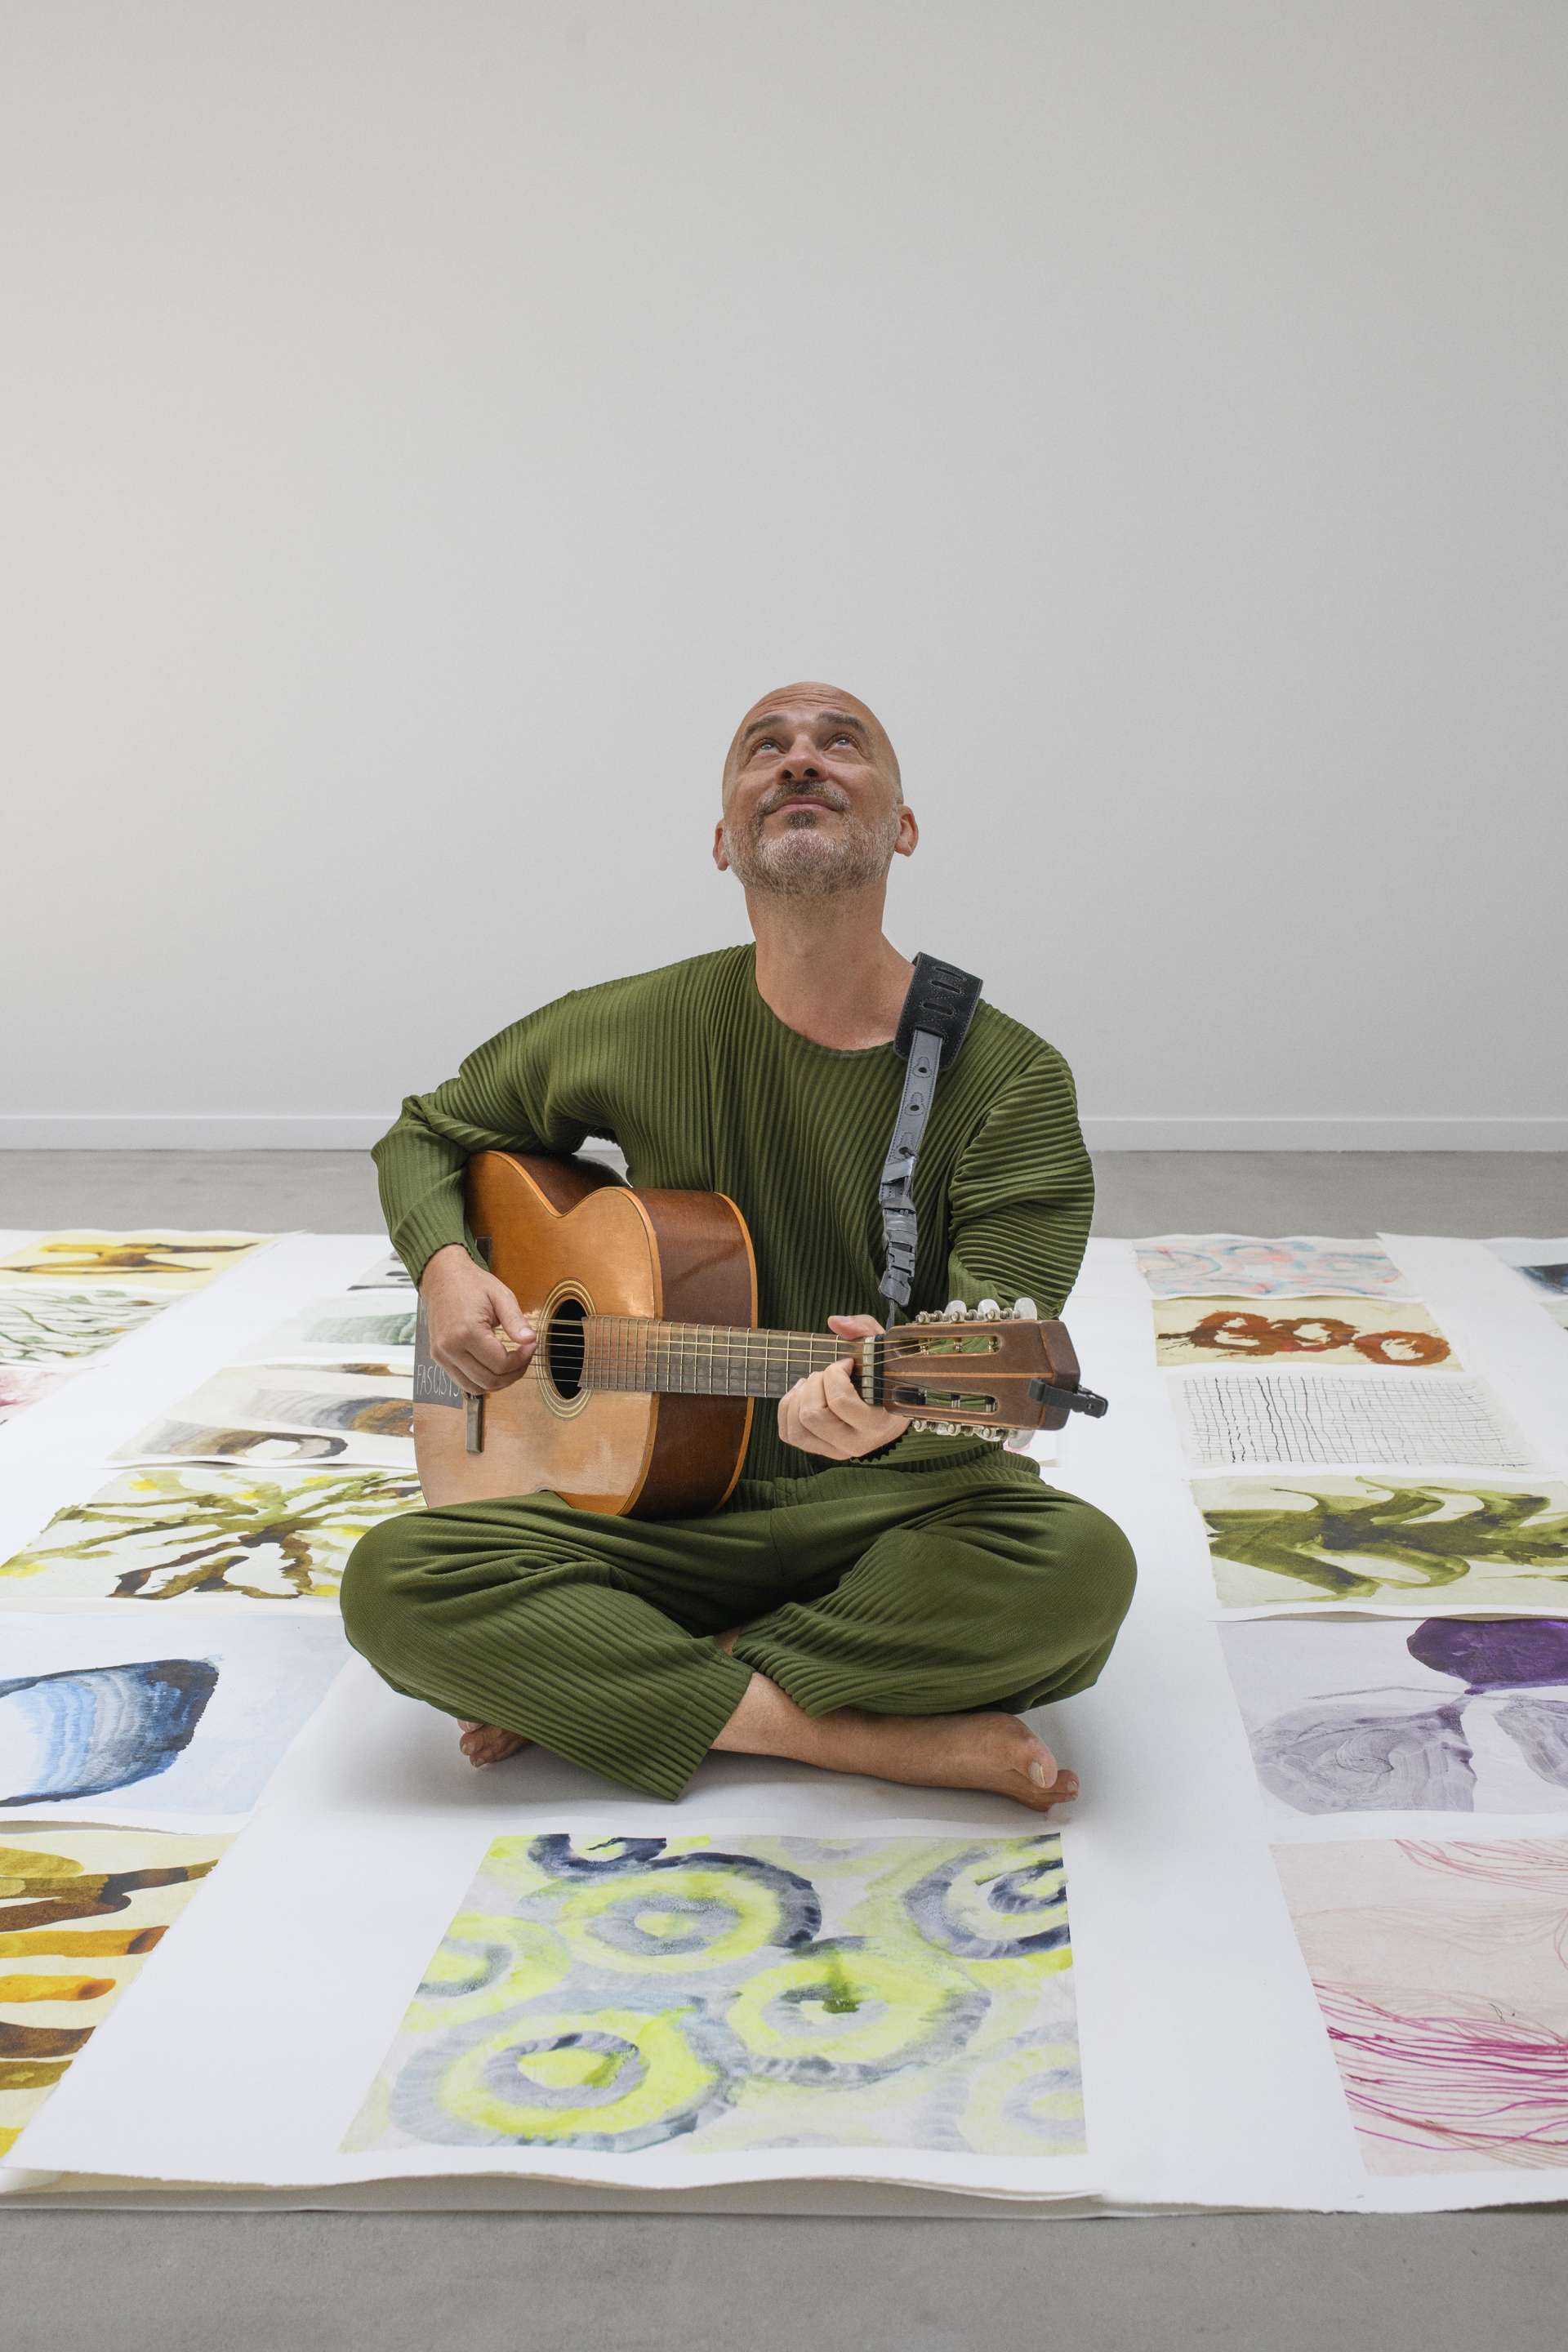 Assis en tailleur au sol sur une immense toile colorée, Lucas Santtana, guitare à la main, regarde le ciel. 